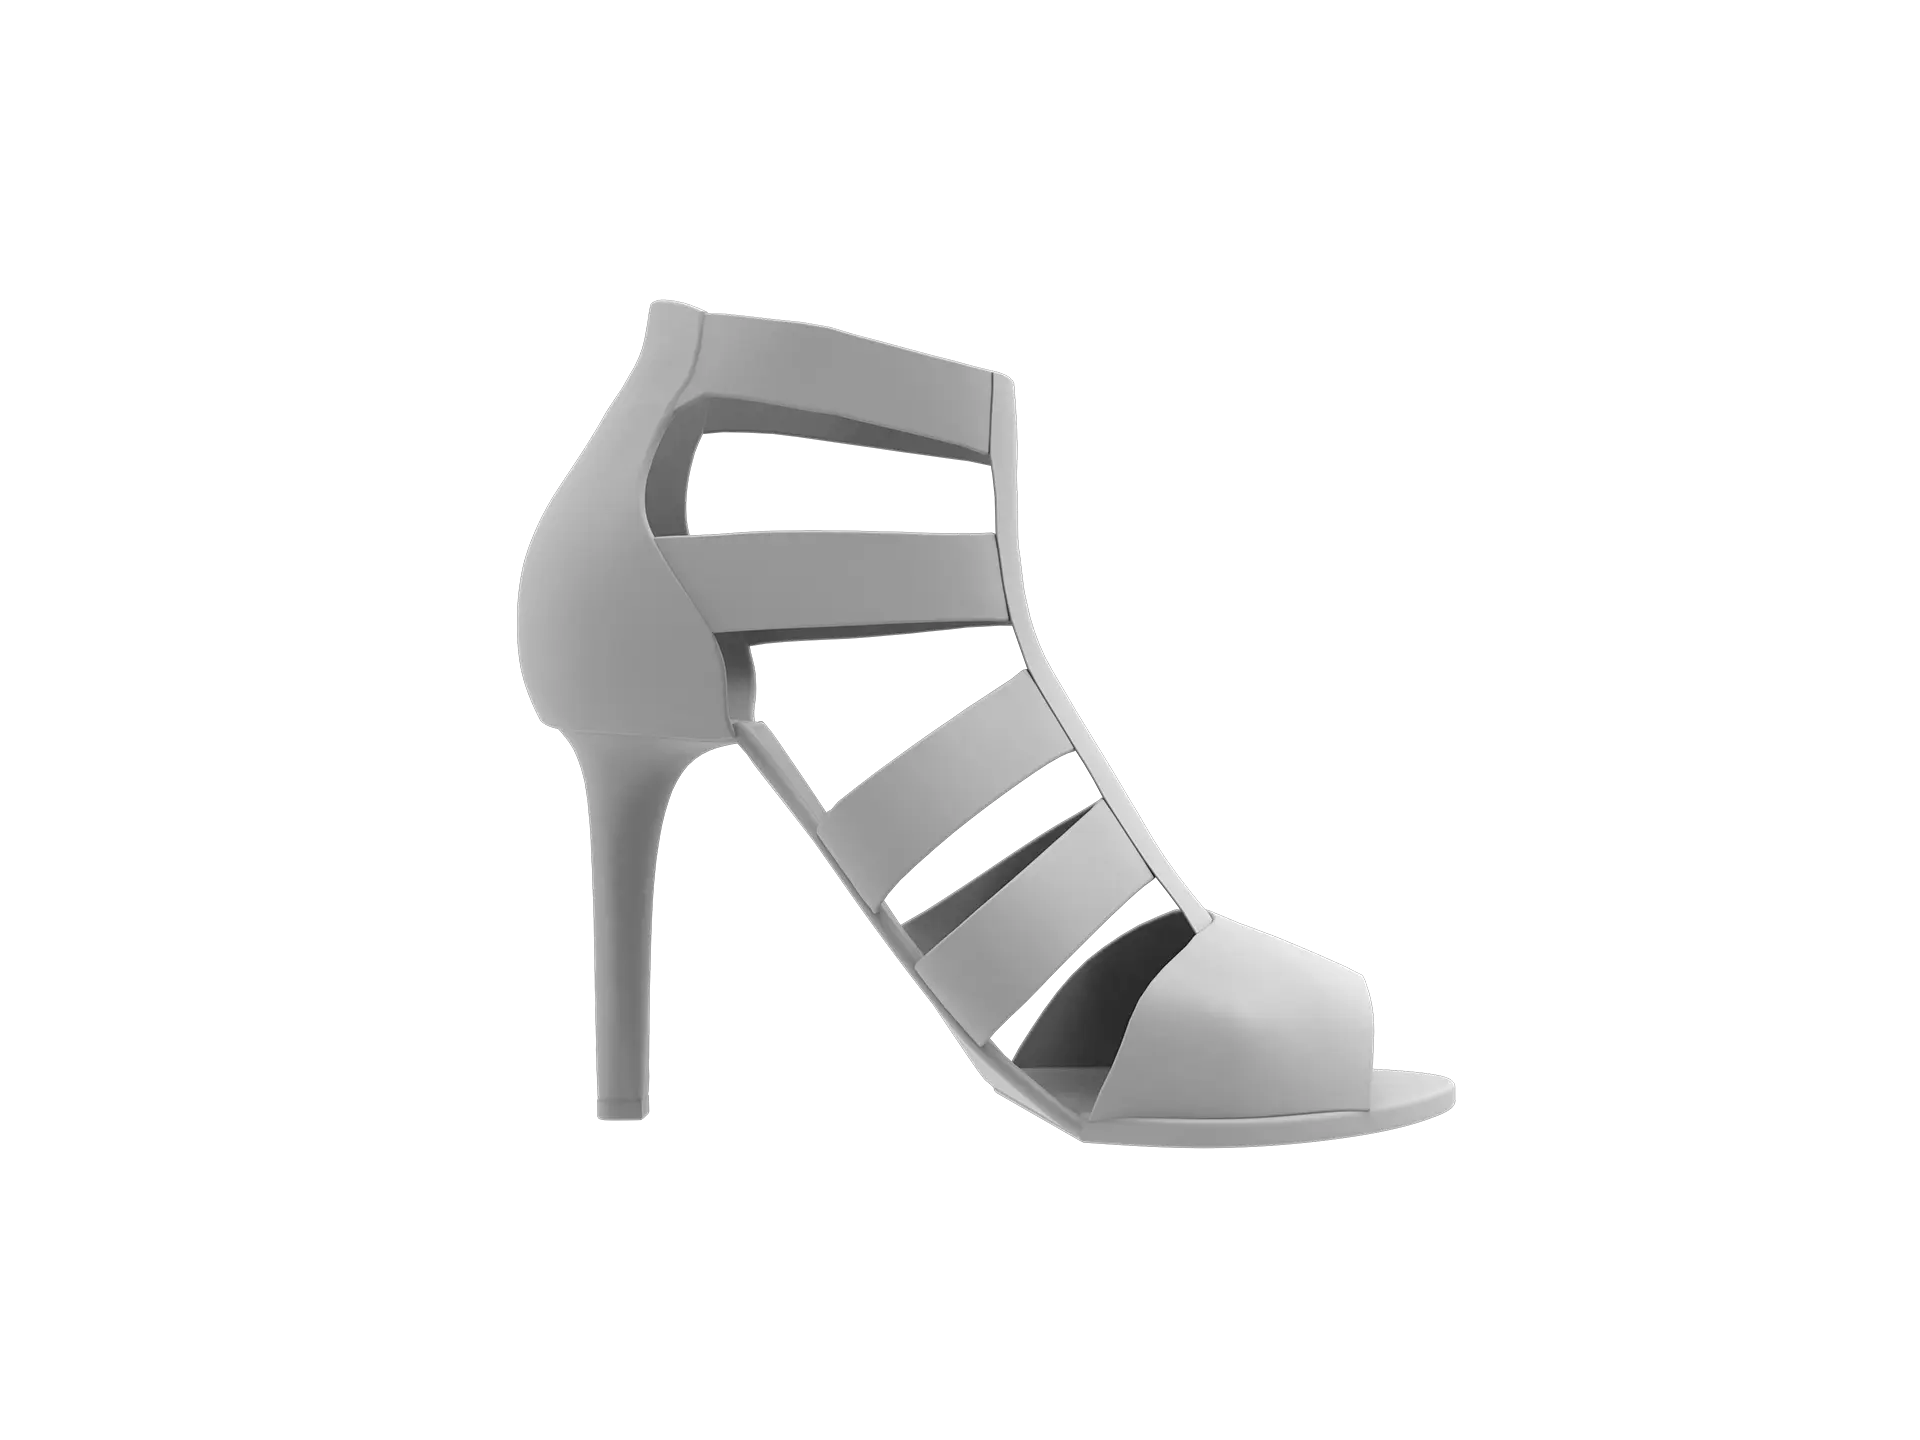 un-real-zampolini-biffi-gentili_virtual-fashion-calzature-scarpe-suole_4